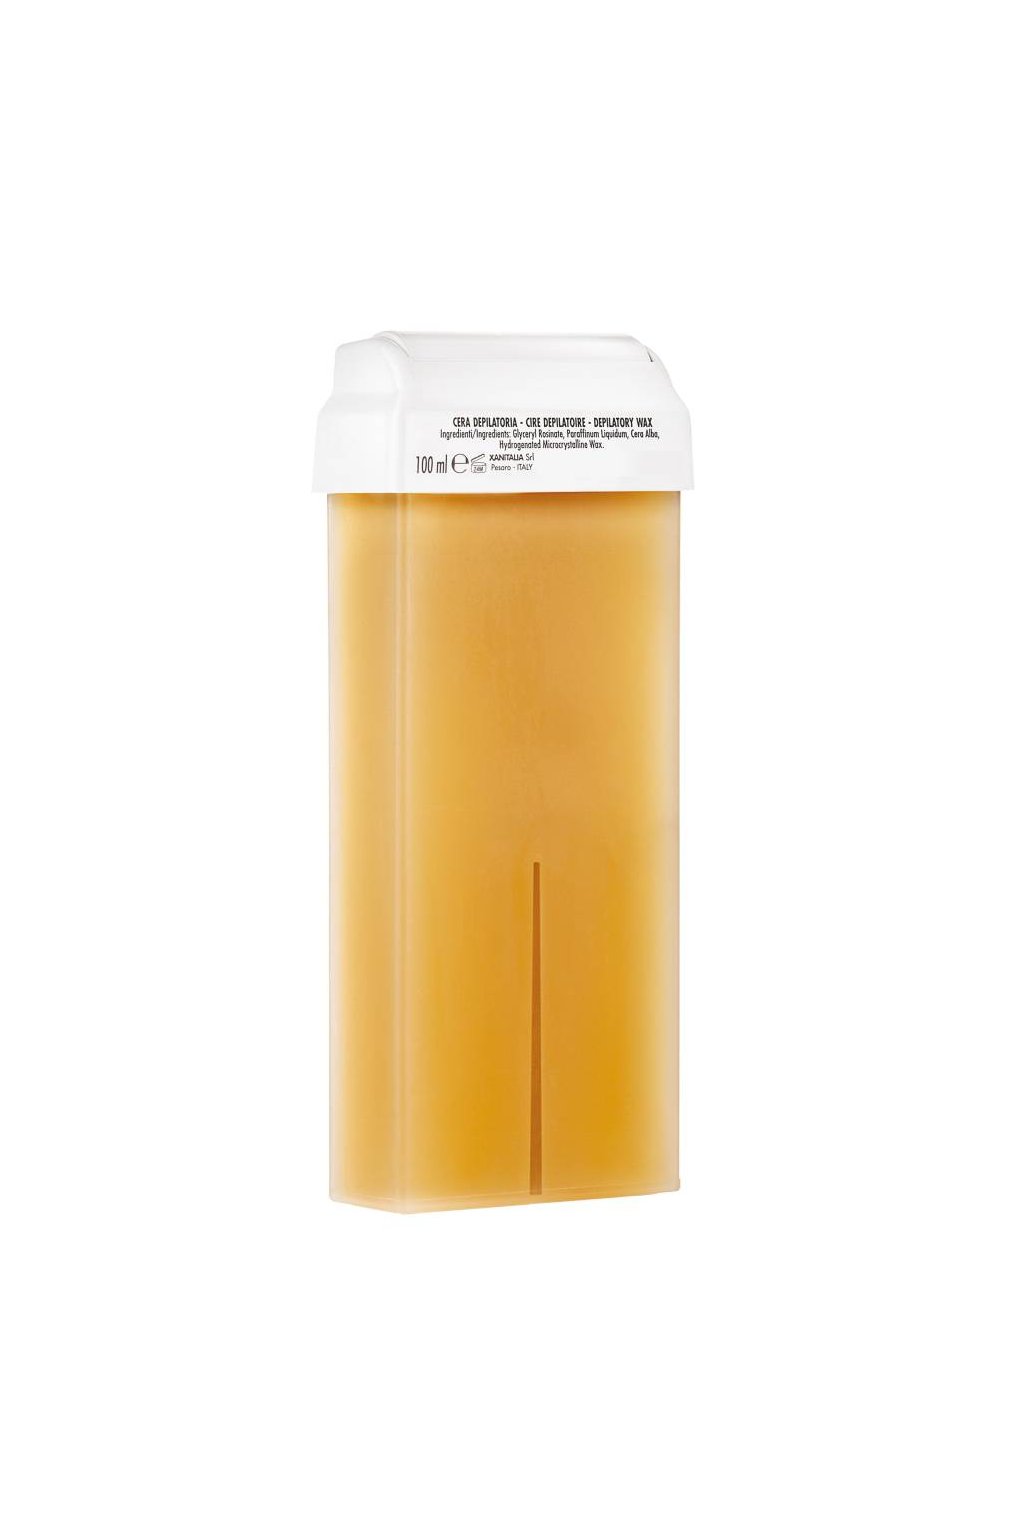 Xanitalia Epilační vosk MED přírodní s rostlinnými oleji, s Roll-on hlavicí nebo větší balení (Obsah 100 ml)